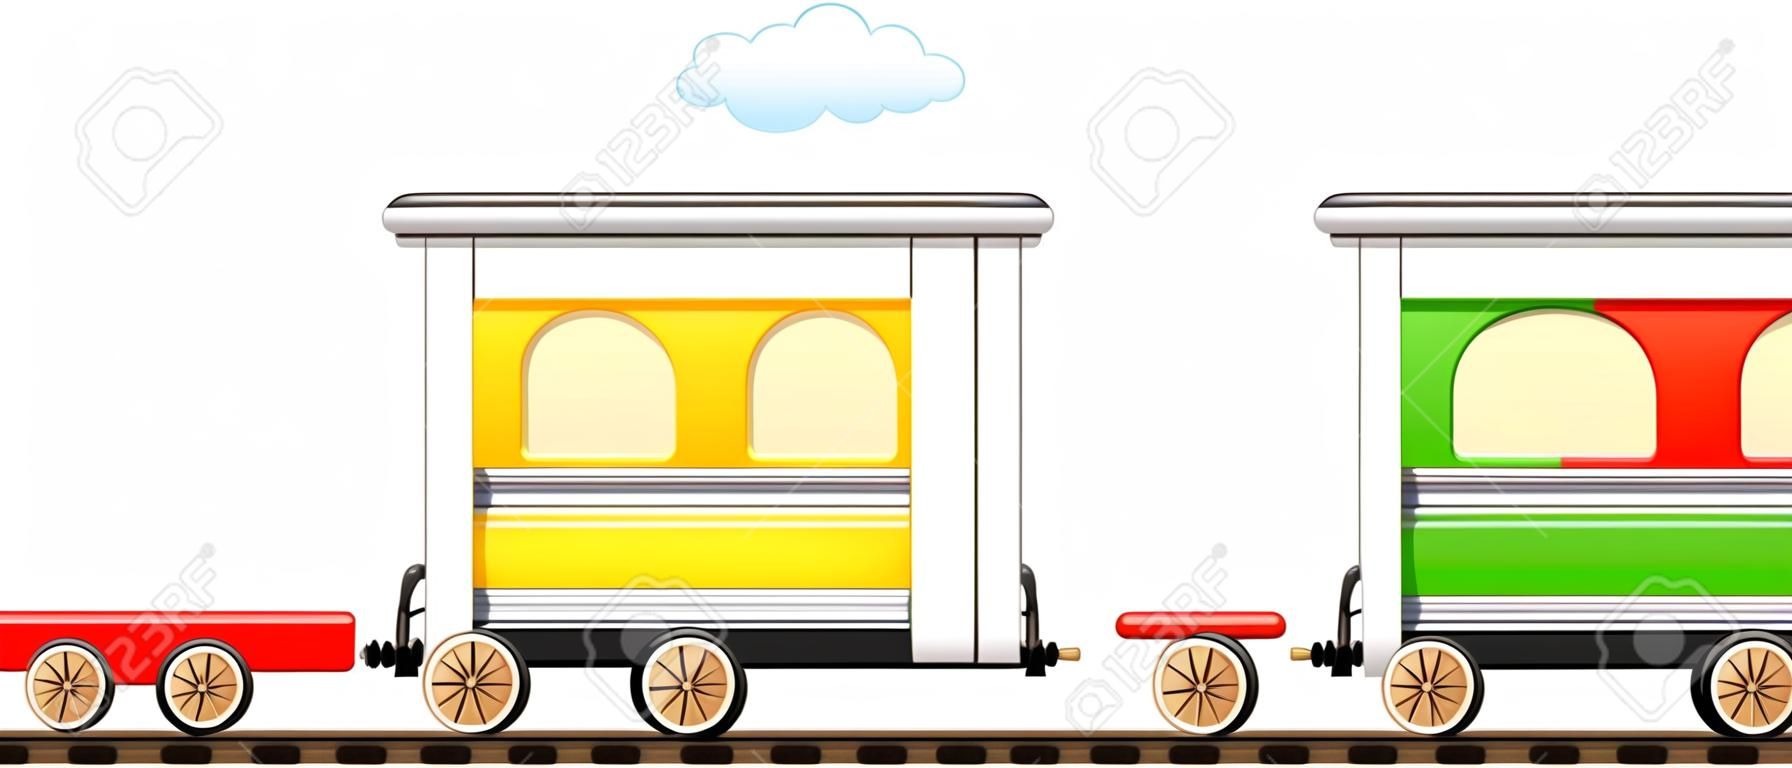 desenho animado isolado trem bonito com carruagem colorida na estrada de ferro